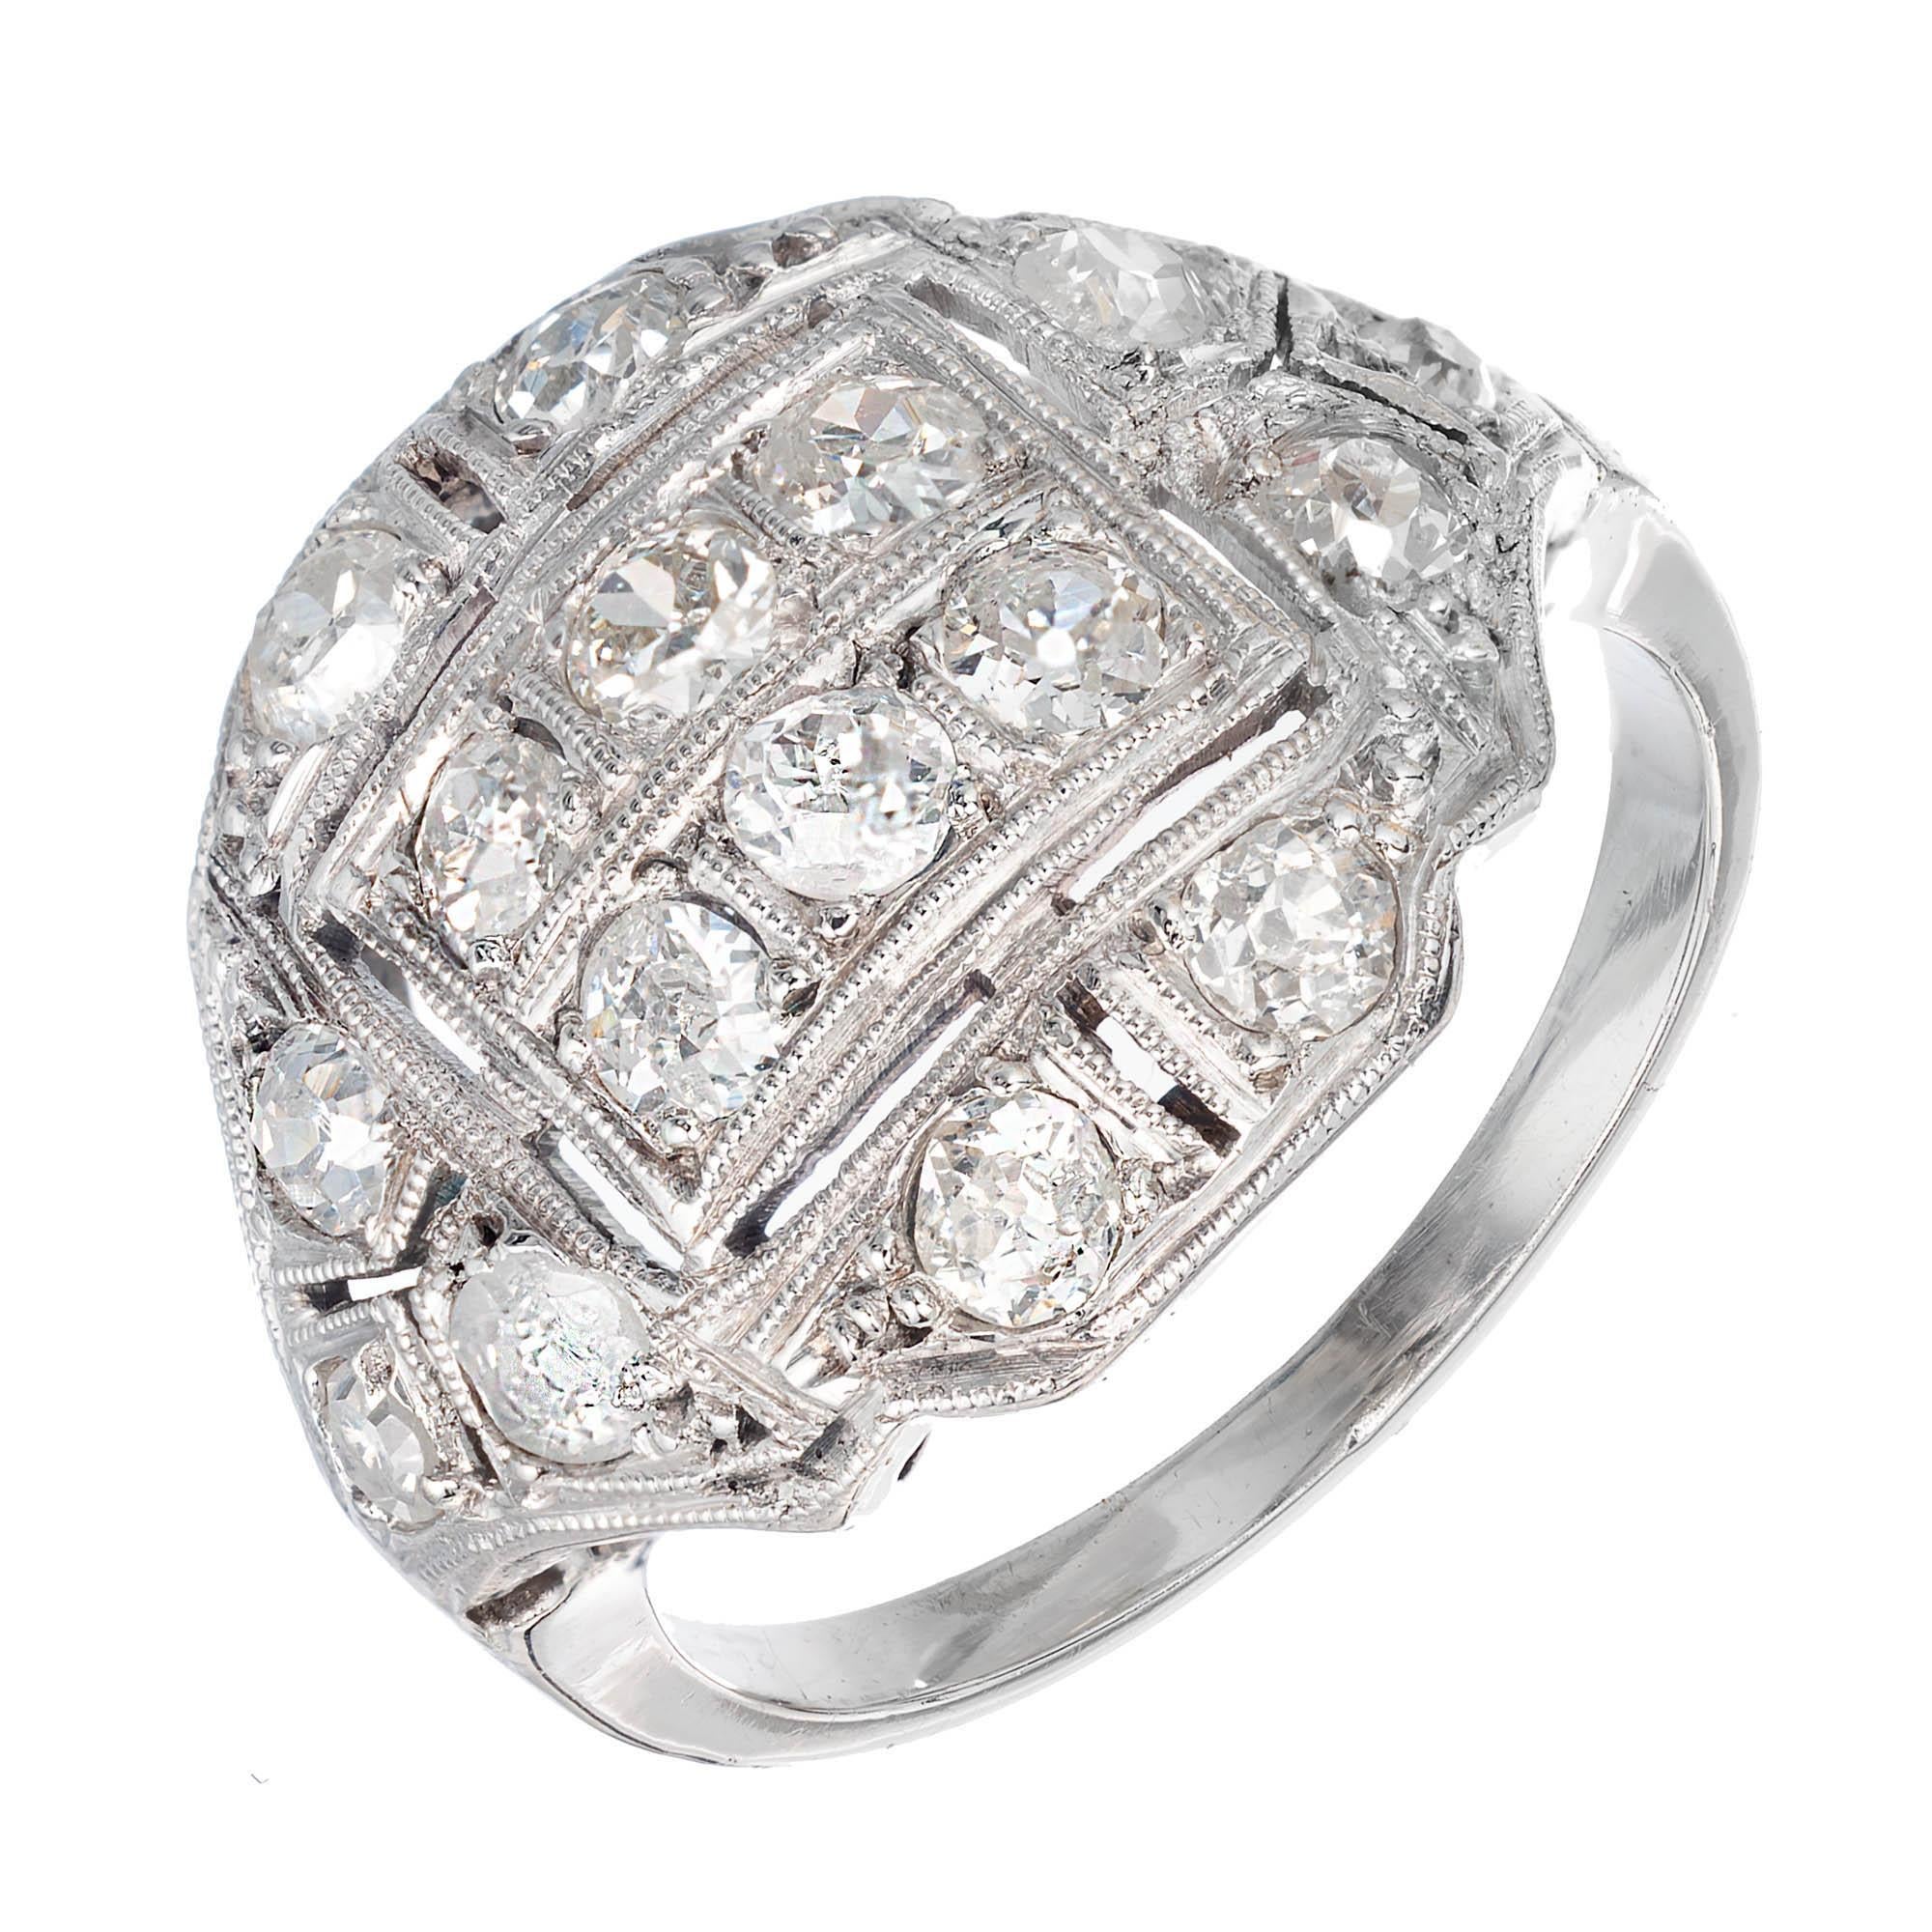 Viktorianischer Diamantring - Johannisbeere in Pinkie-Größe. Kann größer gemacht werden. Einfache niedrige Kuppel mit einem Bandsatzdesign. Um 1890.

16 altes Bergwerk H-I S1-I  Diamanten, ca. 0,90 Karat 
Größe 4,25 und ansehnlich 
Platin 
Getestet: